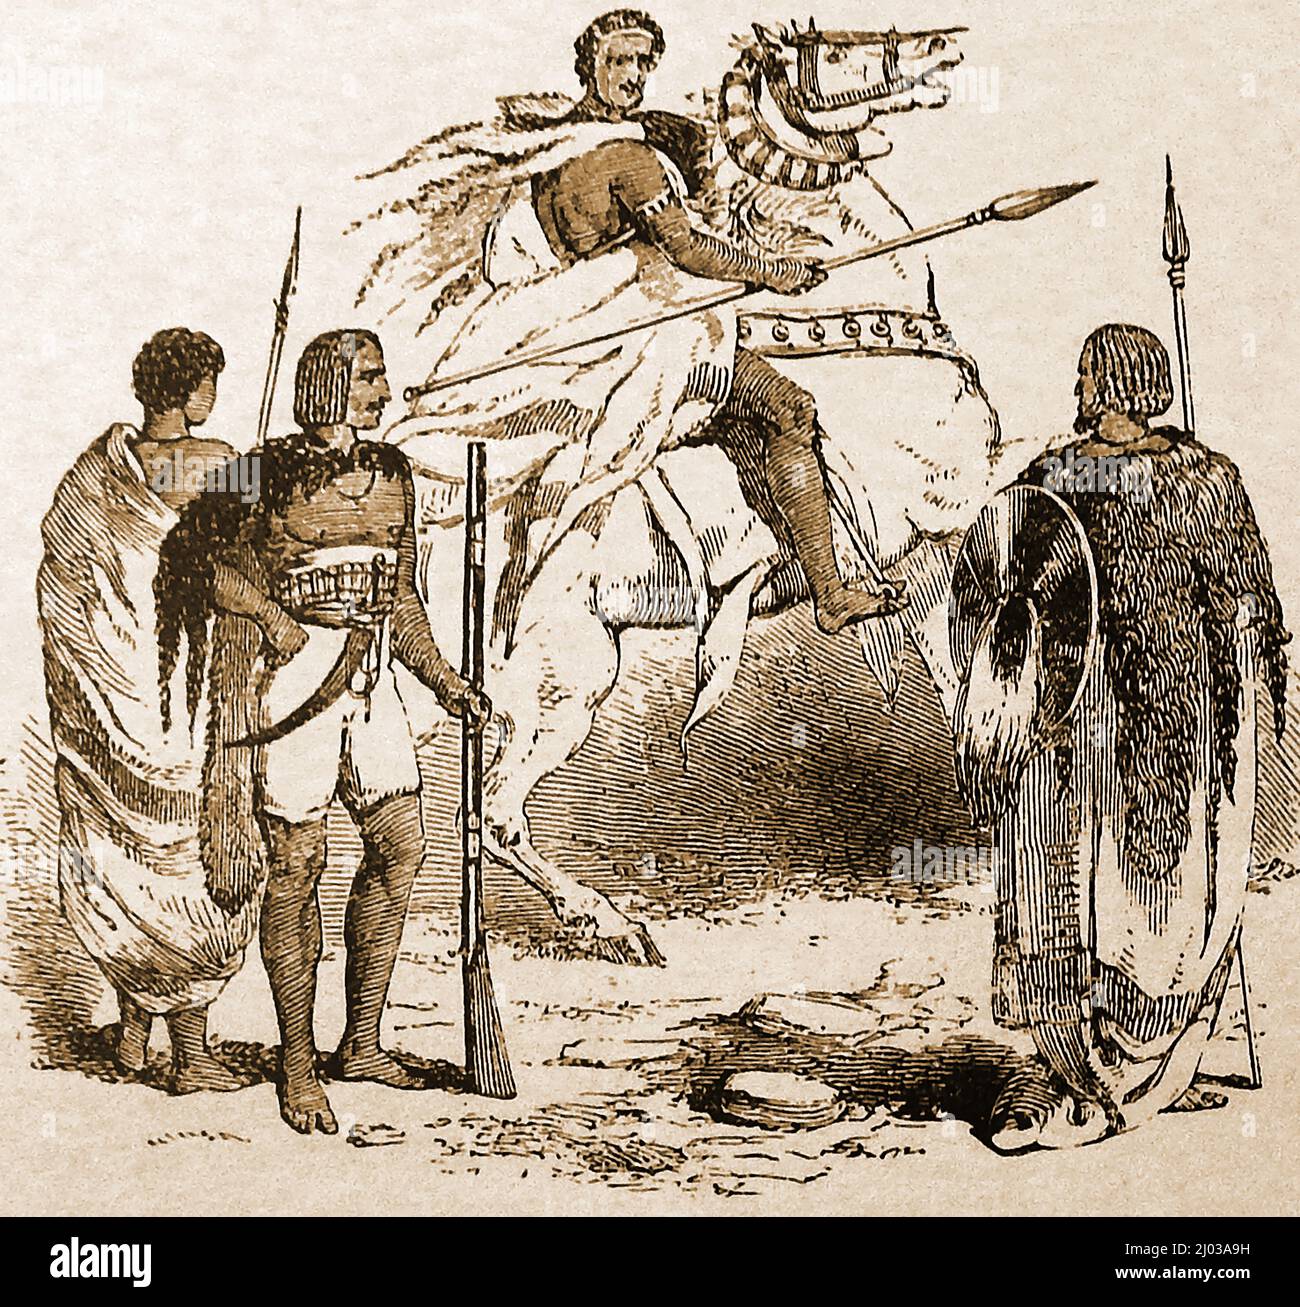 Illustrazione del 1890 di un capo Abissiniano su un cavallo e i suoi soldati Foto Stock